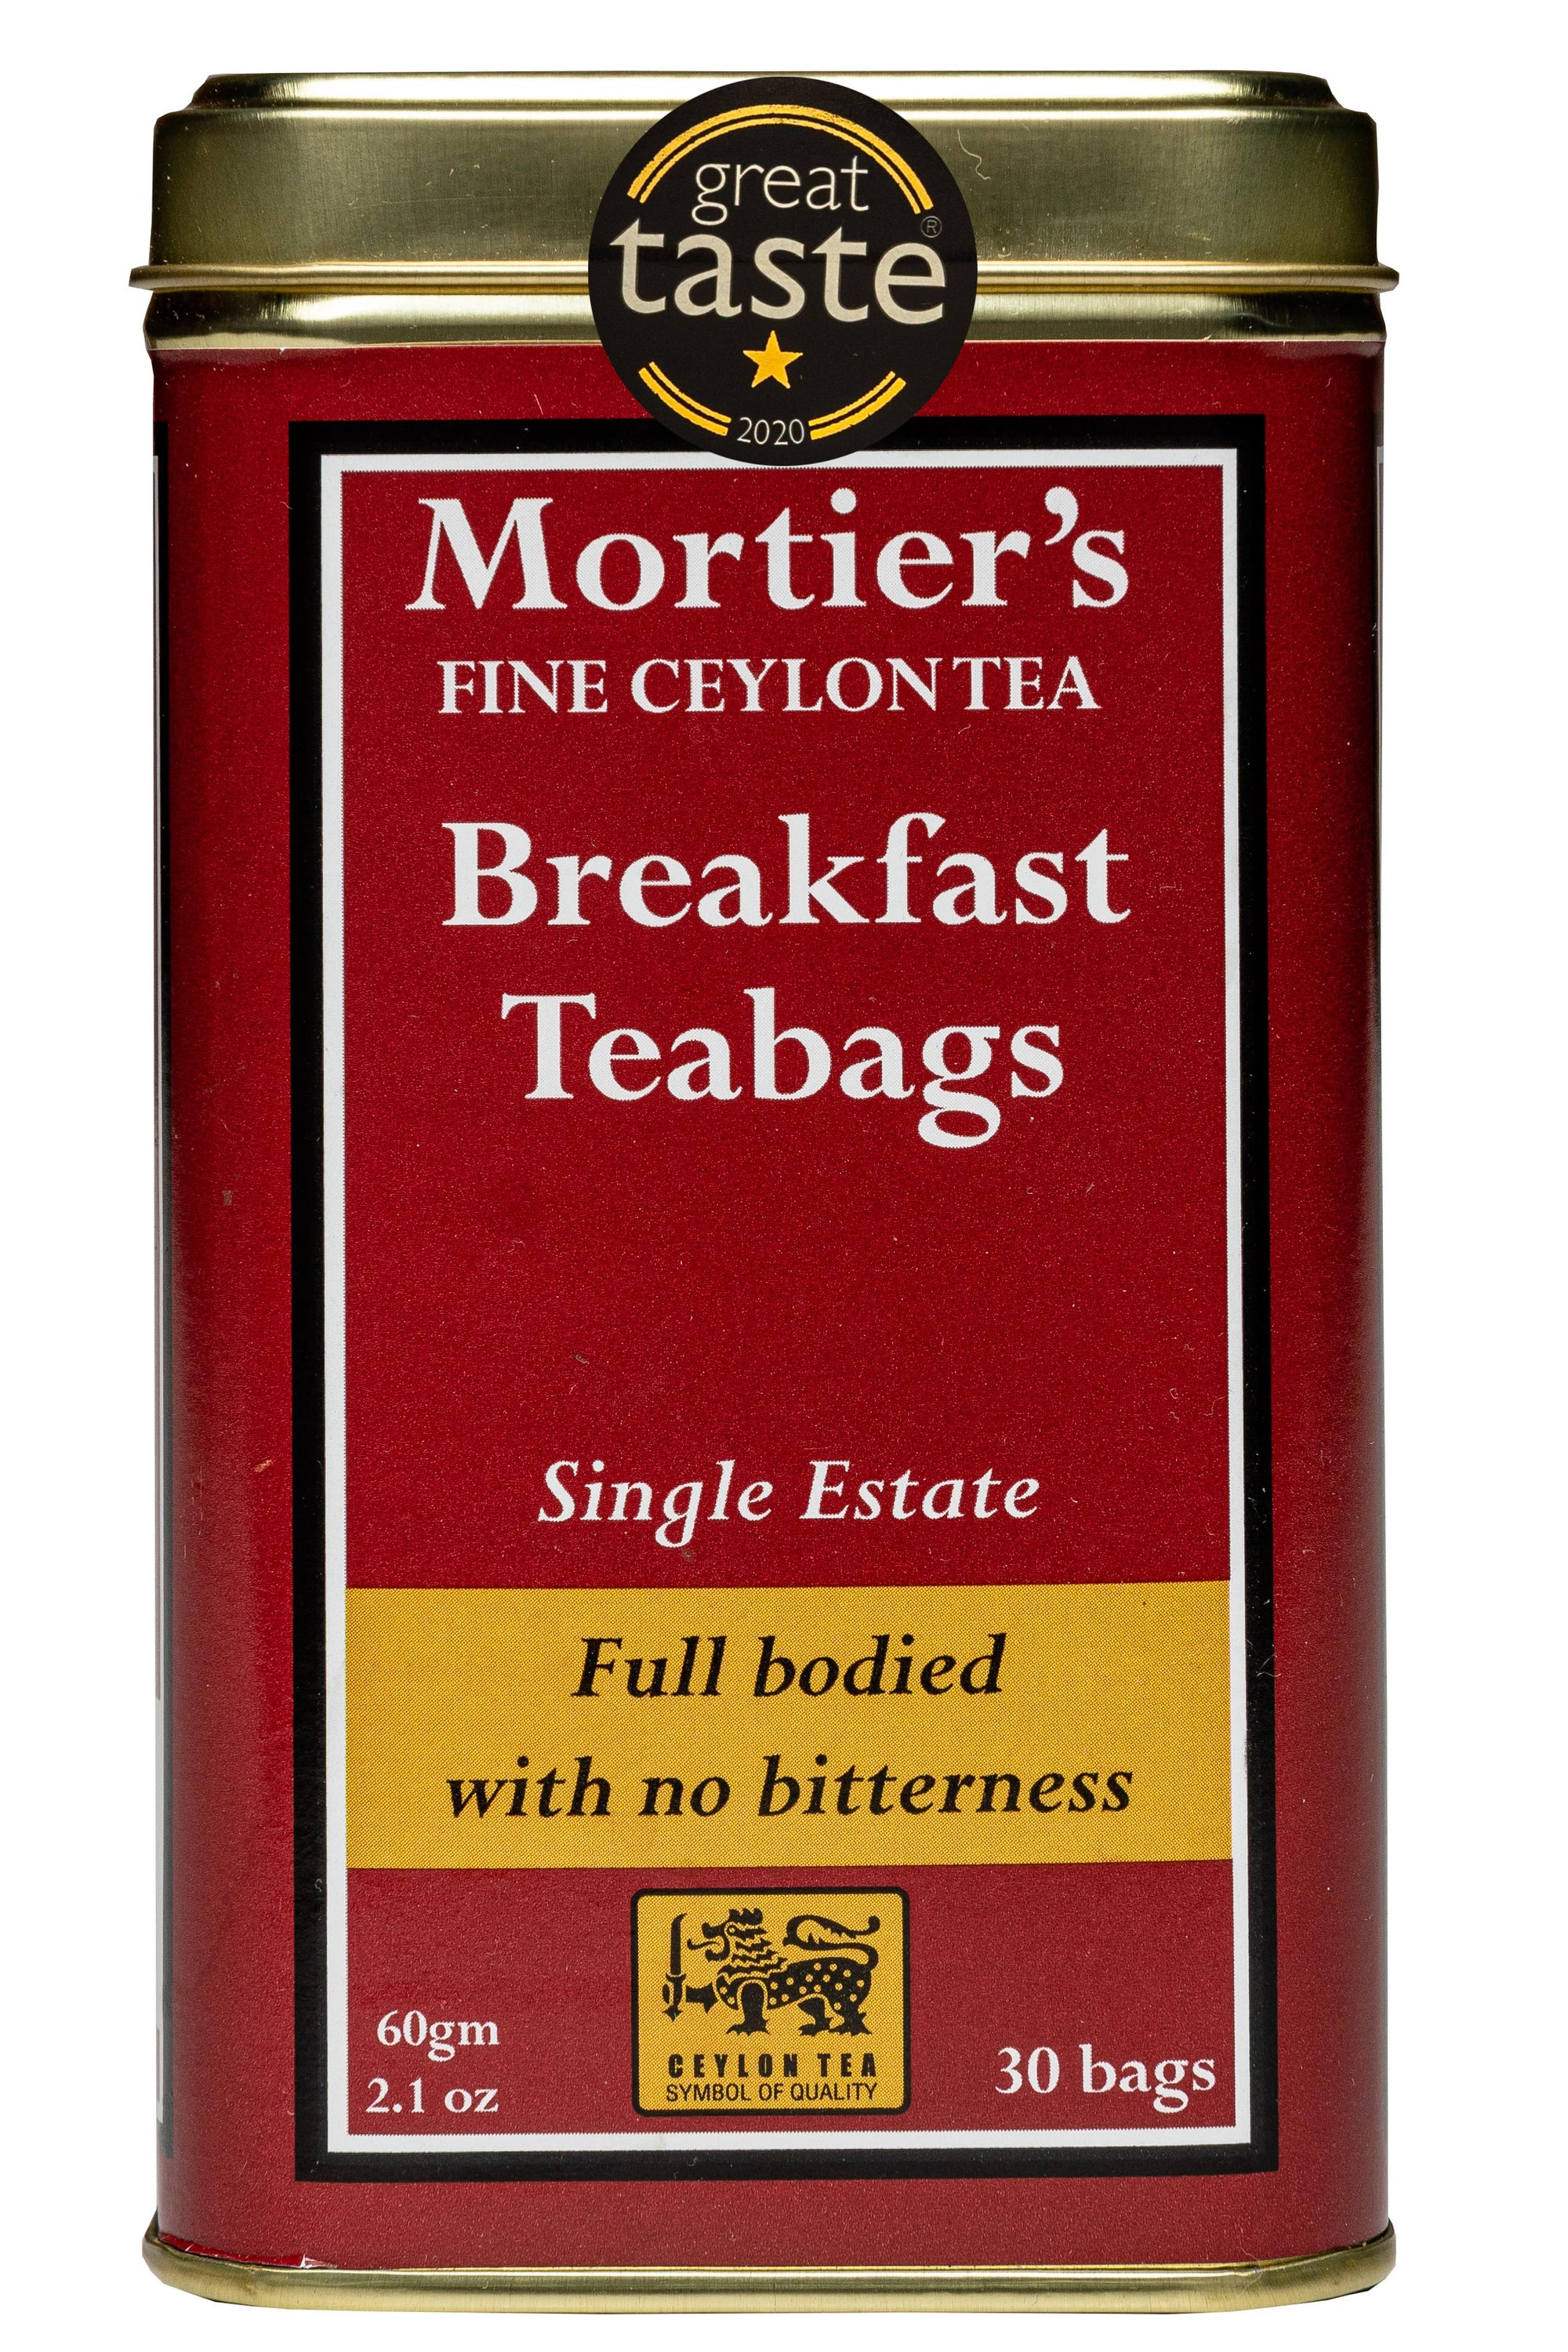 GREAT TASTE AWARD - TEA BAGS IN A CADDY - CEYLON BREAKFAST (30)